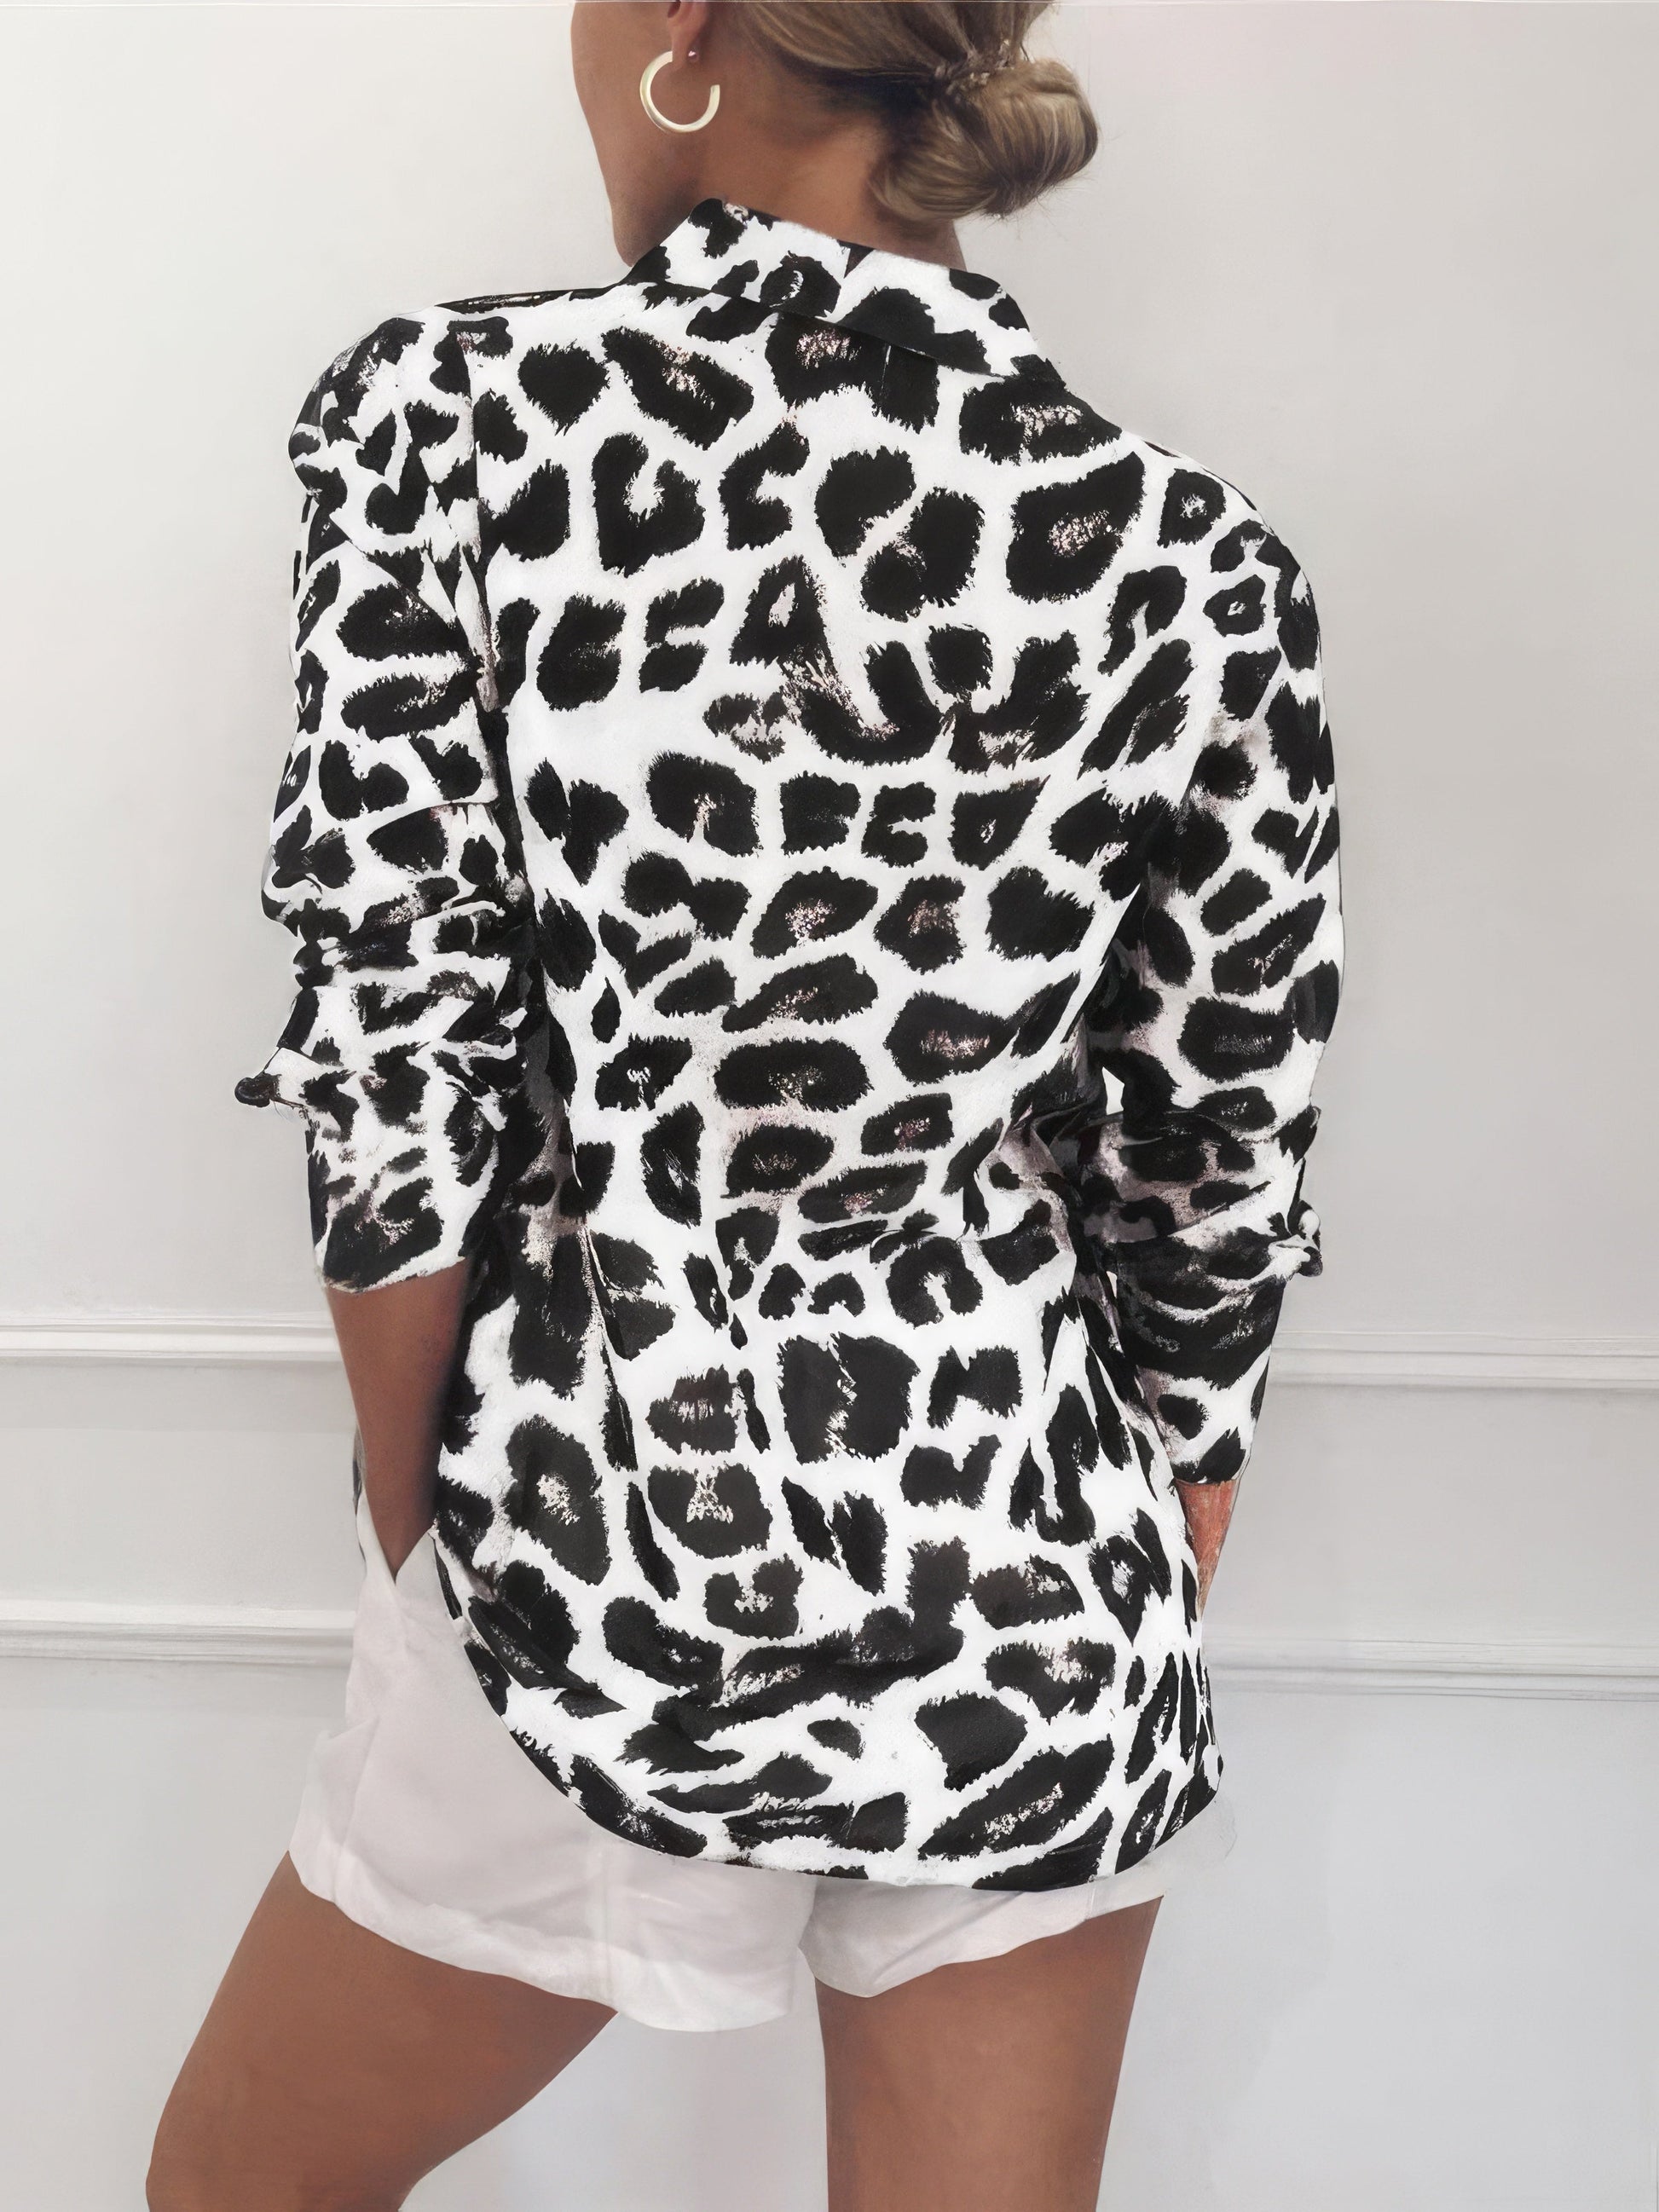 Blouses - Leopard Print Lapel Button Long Sleeve Blouse - MsDressly